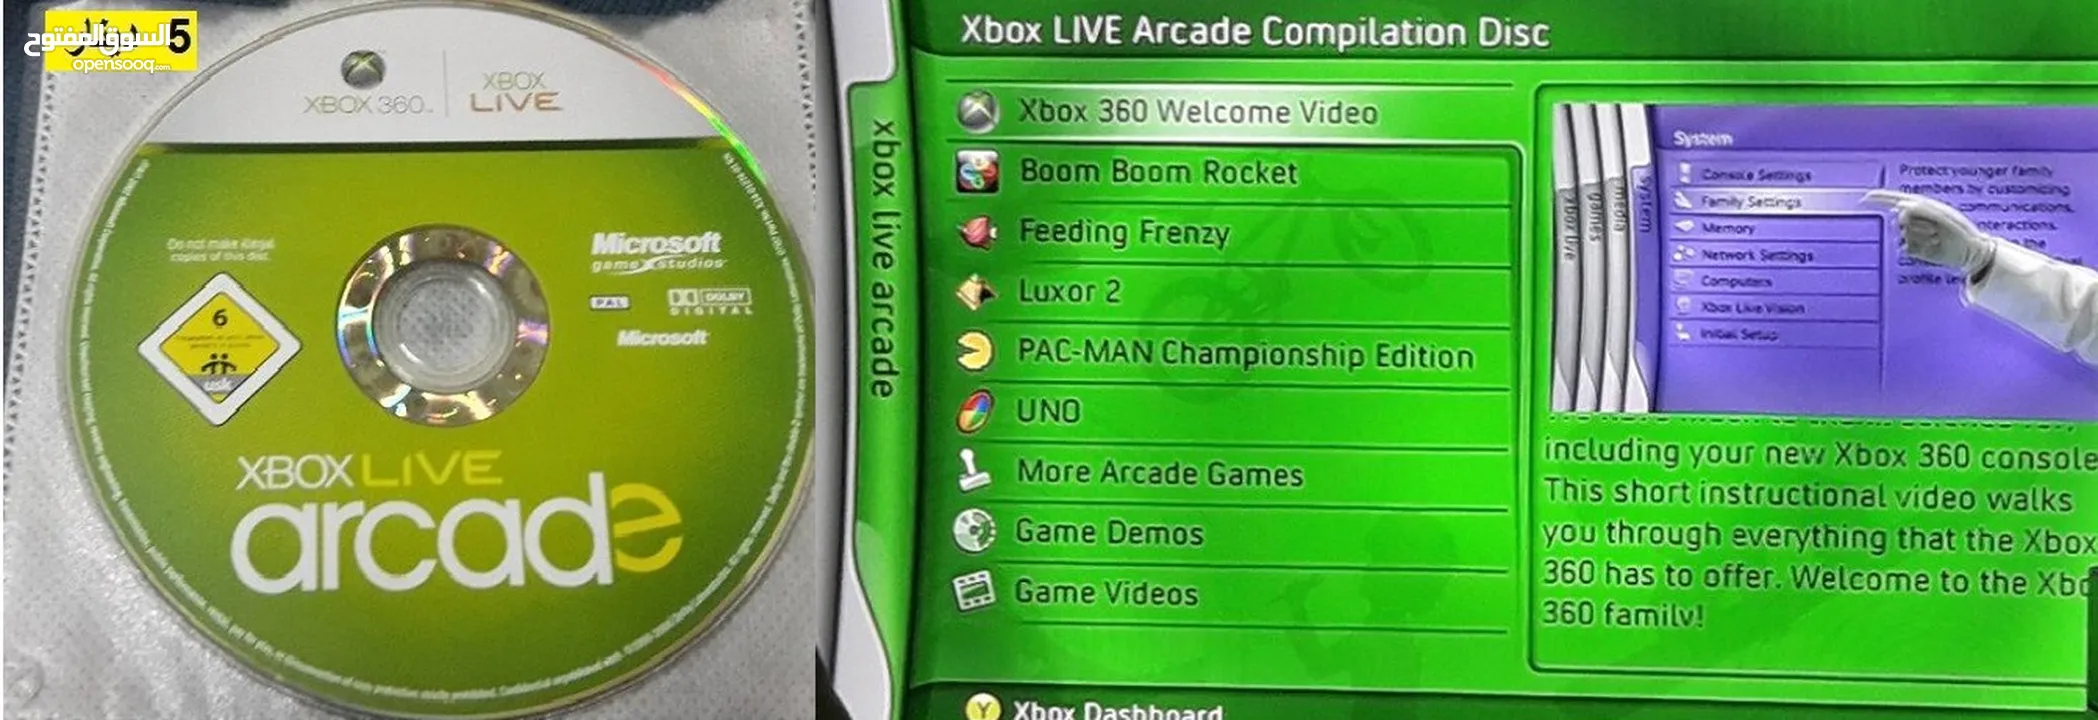 العاب اكسبوكس اصلية للبيع Xbox games